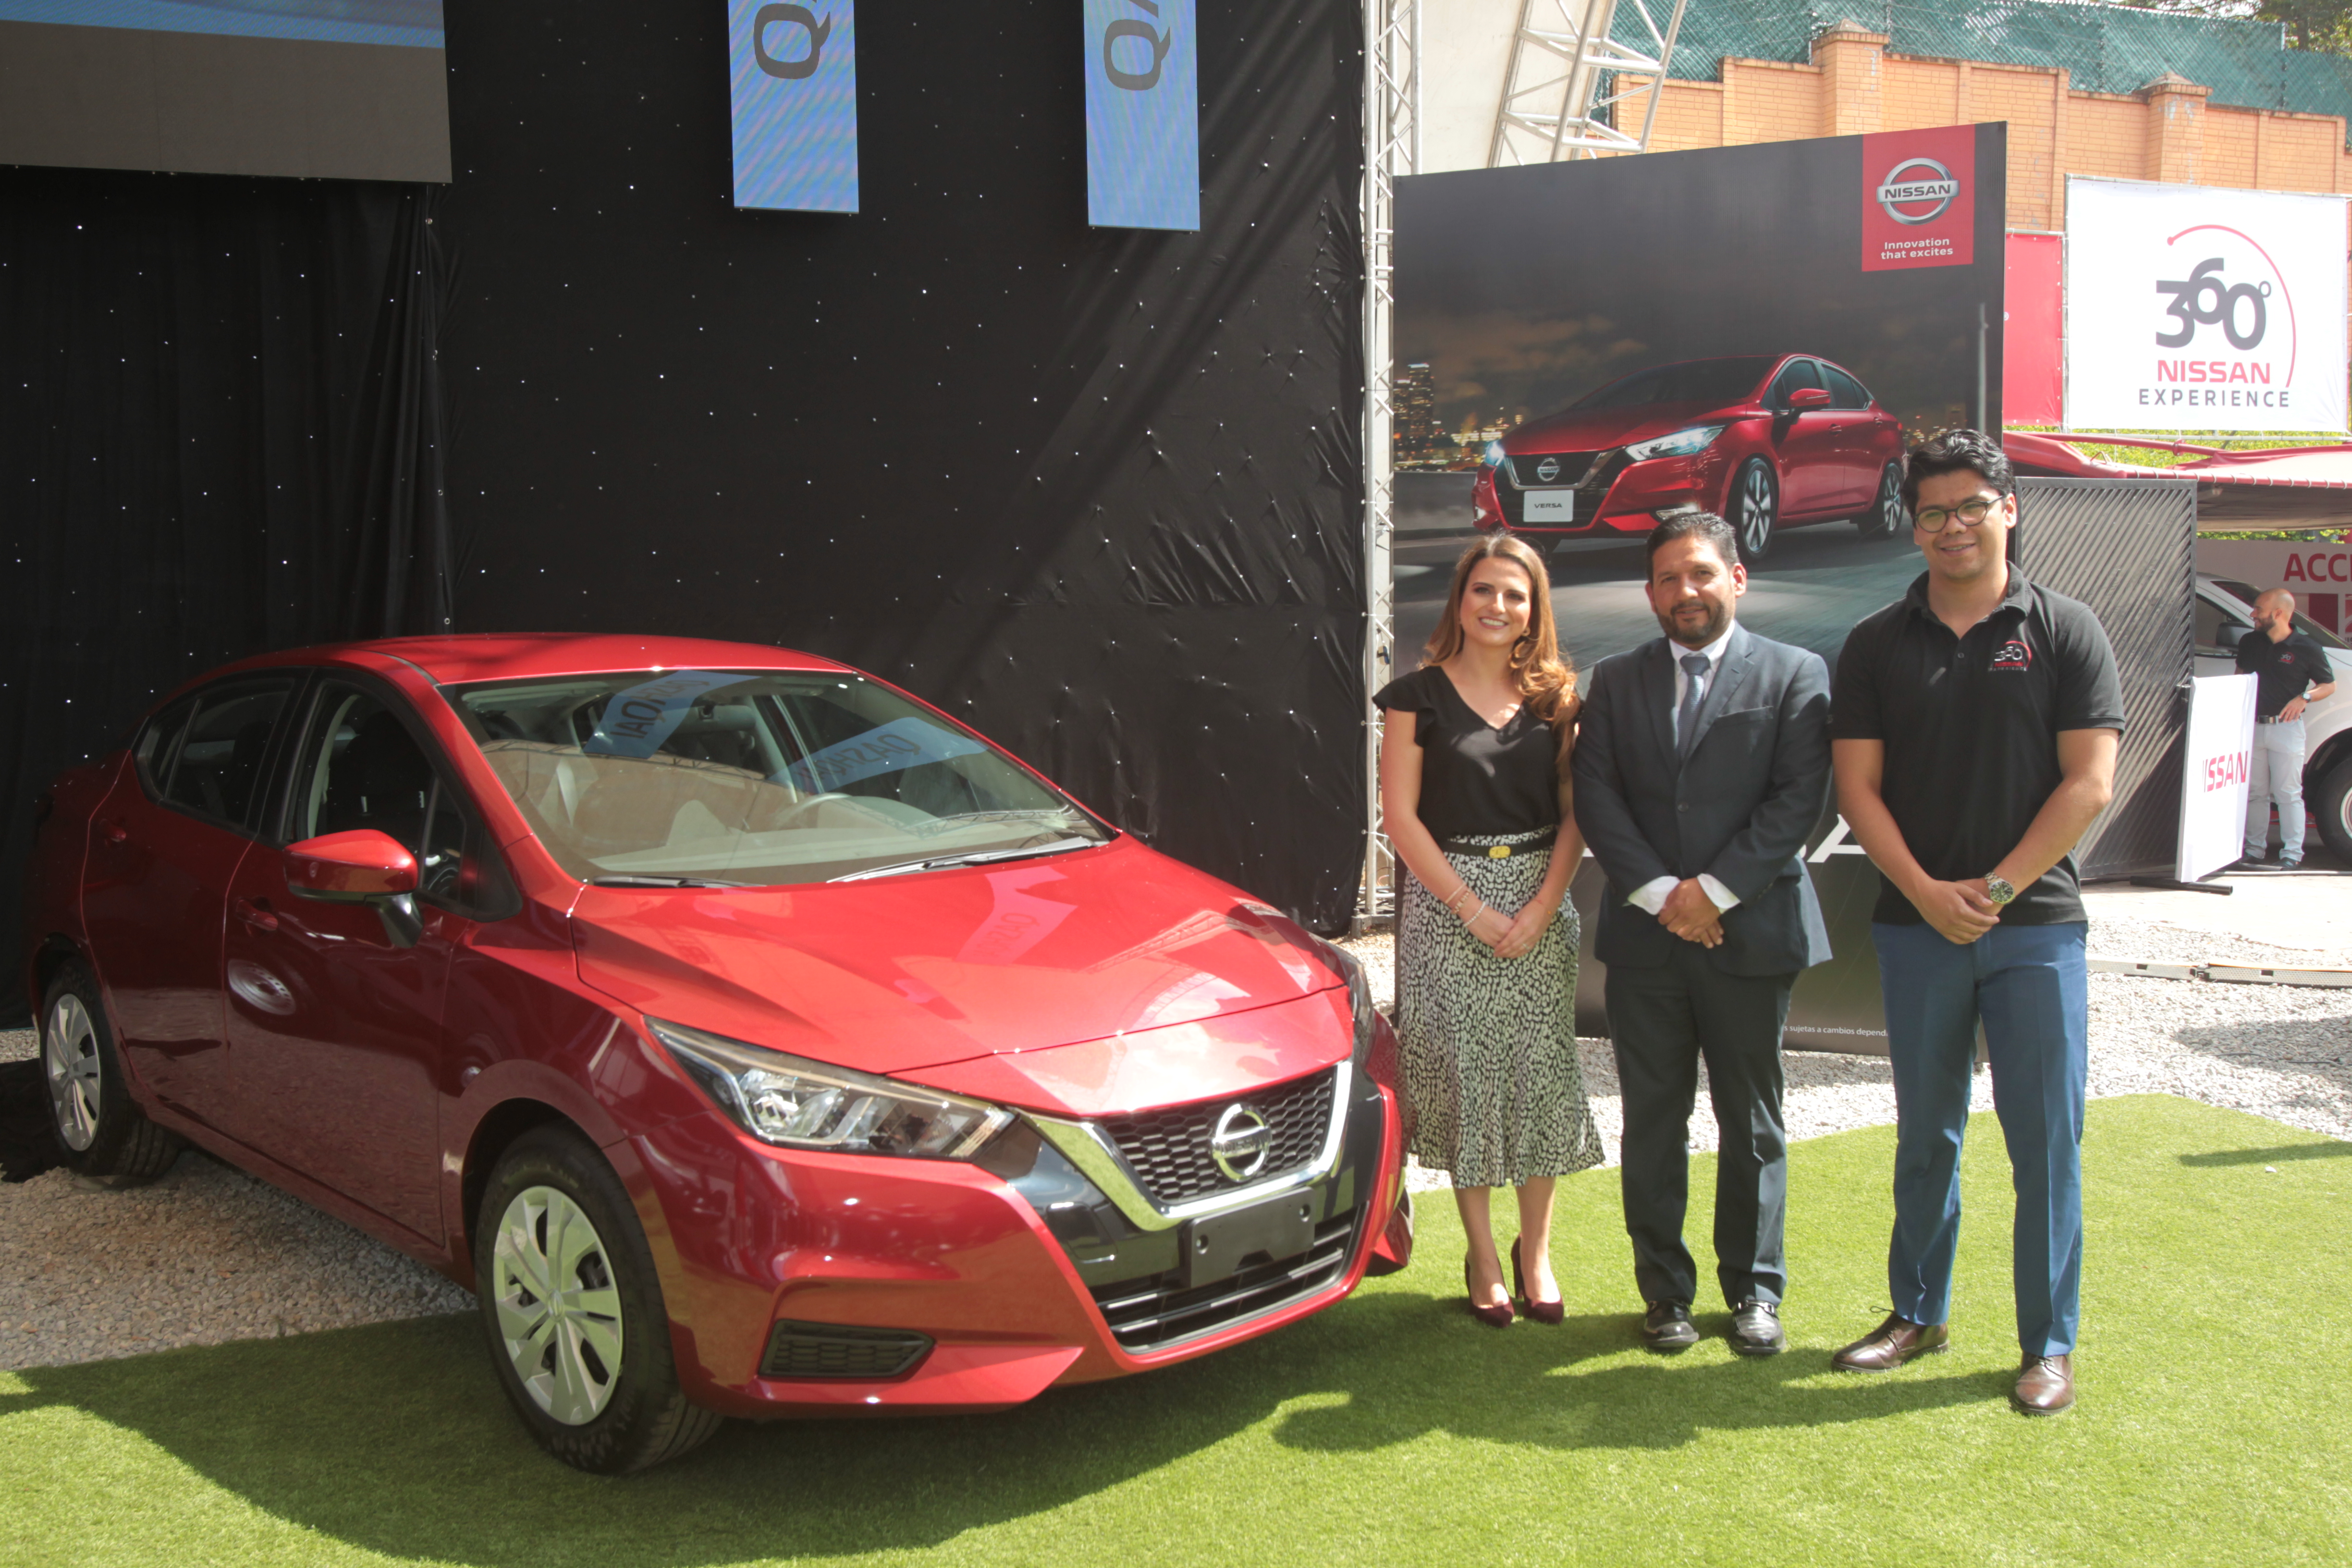 Representantes de Excel presentaron el nuevo Nissan Versa. Foto Prensa Libre: Norvin Mendoza